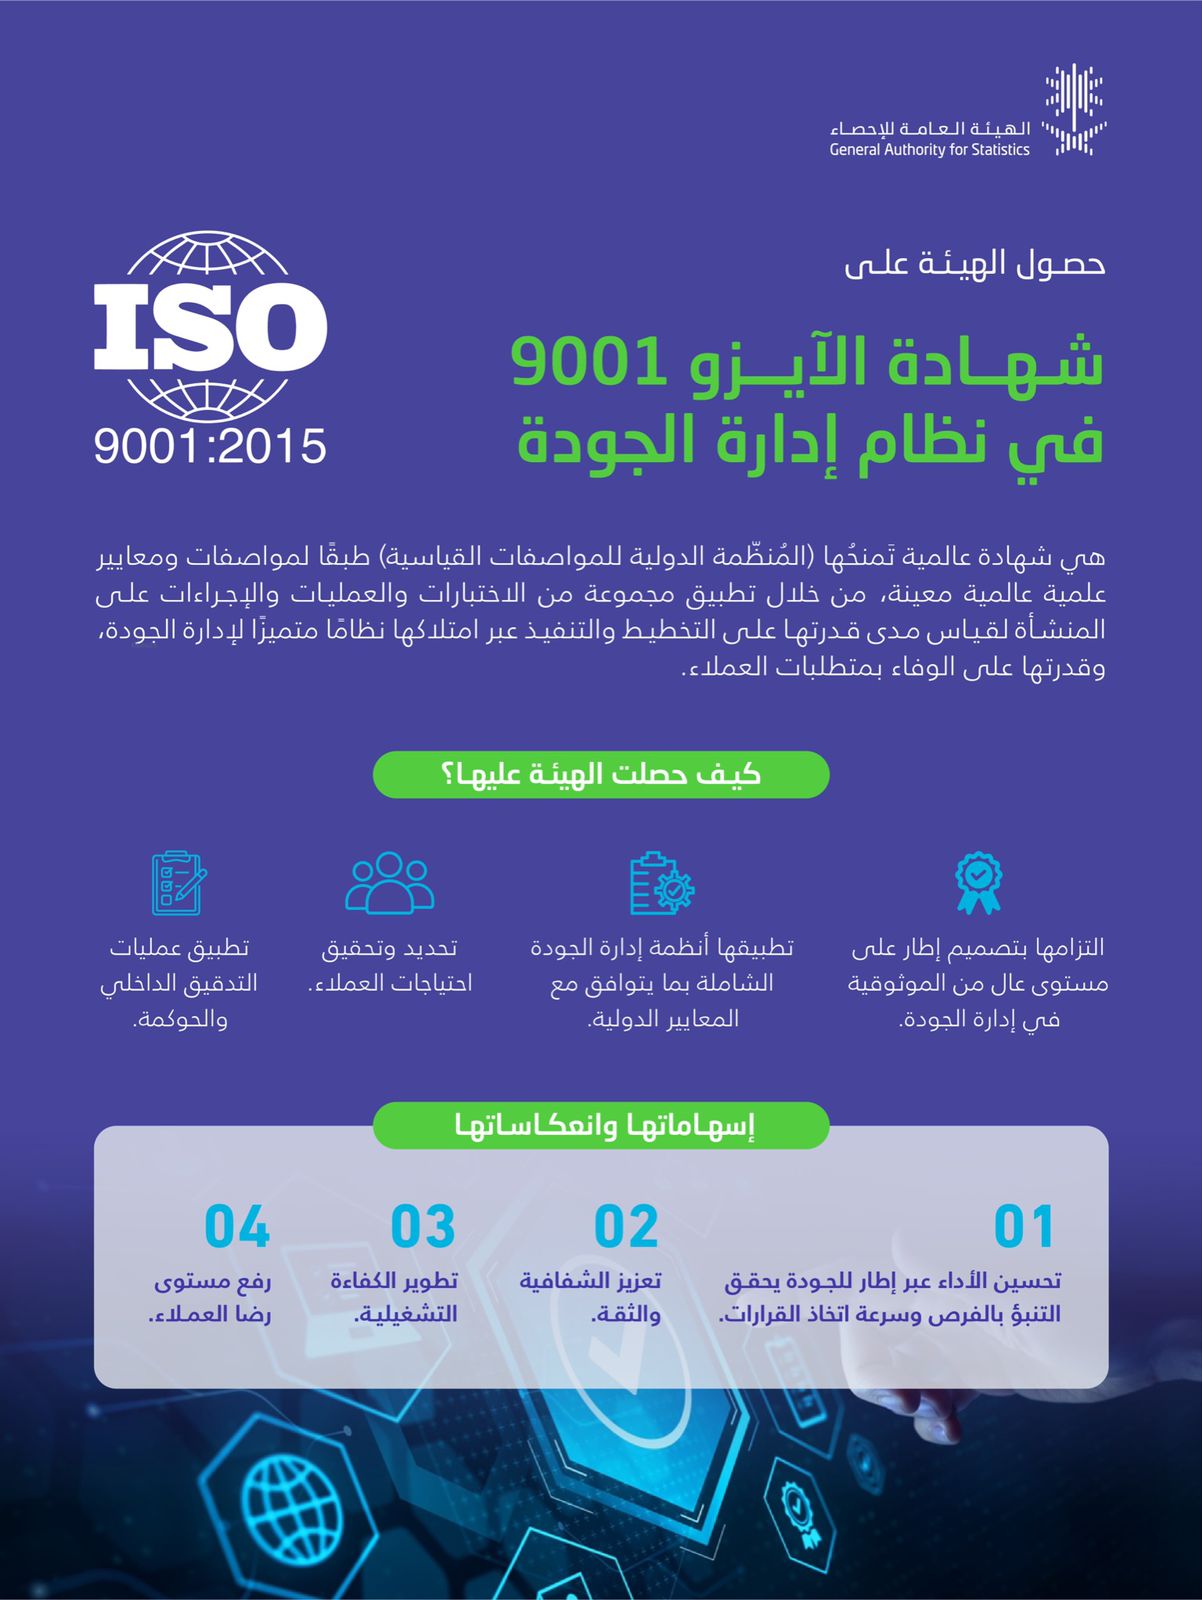 محليات السعودية: الهيئة العامة للإحصاء تحصل على شهادة “الآيزو” في نظام إدارة الجودة